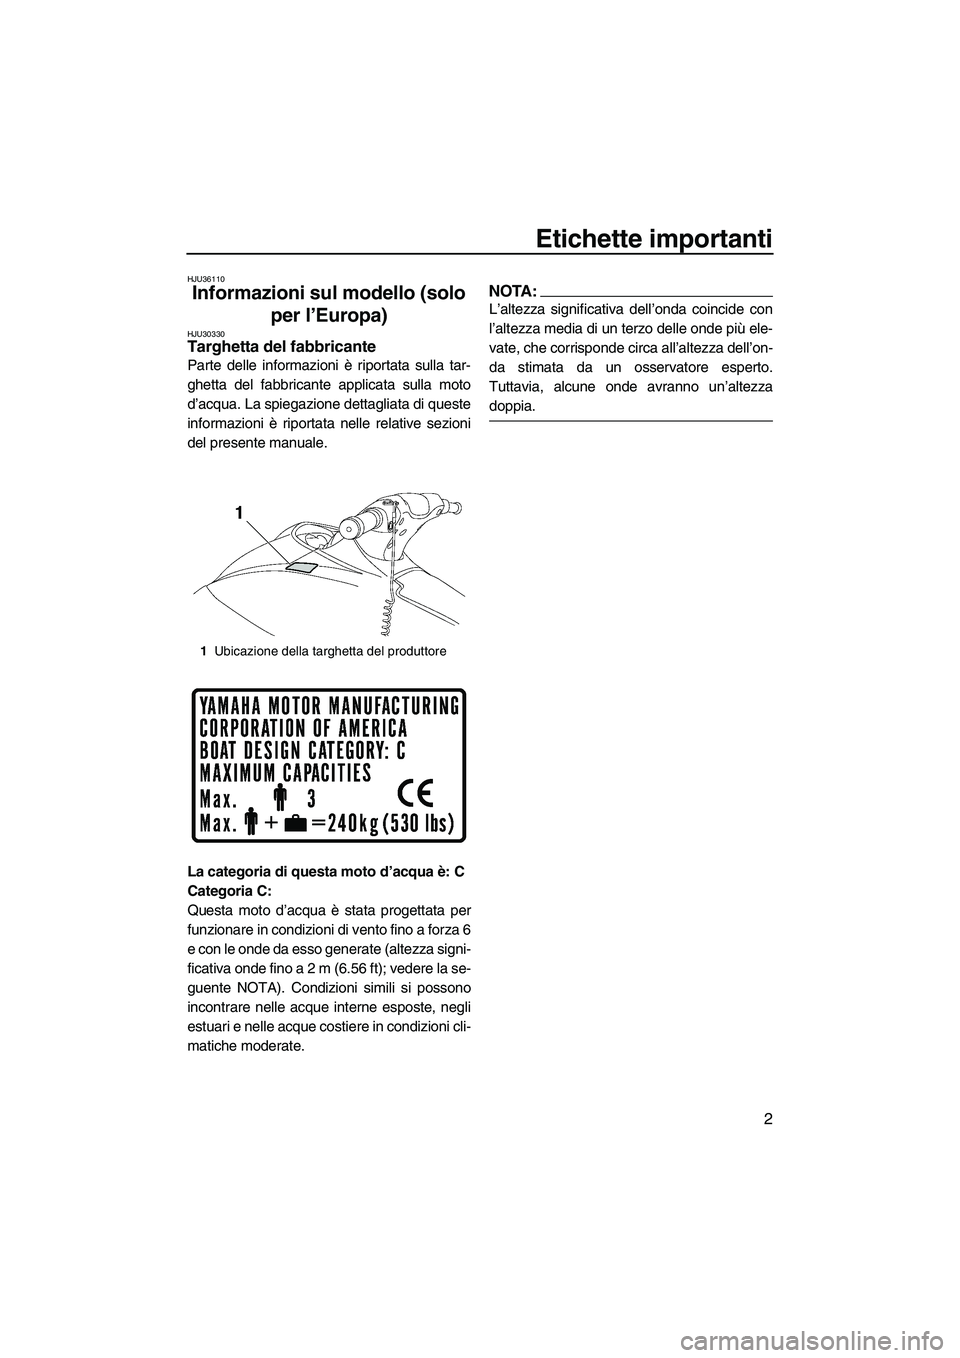 YAMAHA VX SPORT 2007  Manuale duso (in Italian) Etichette importanti
2
HJU36110
Informazioni sul modello (solo 
per l’Europa) 
HJU30330Targhetta del fabbricante 
Parte delle informazioni è riportata sulla tar-
ghetta del fabbricante applicata su